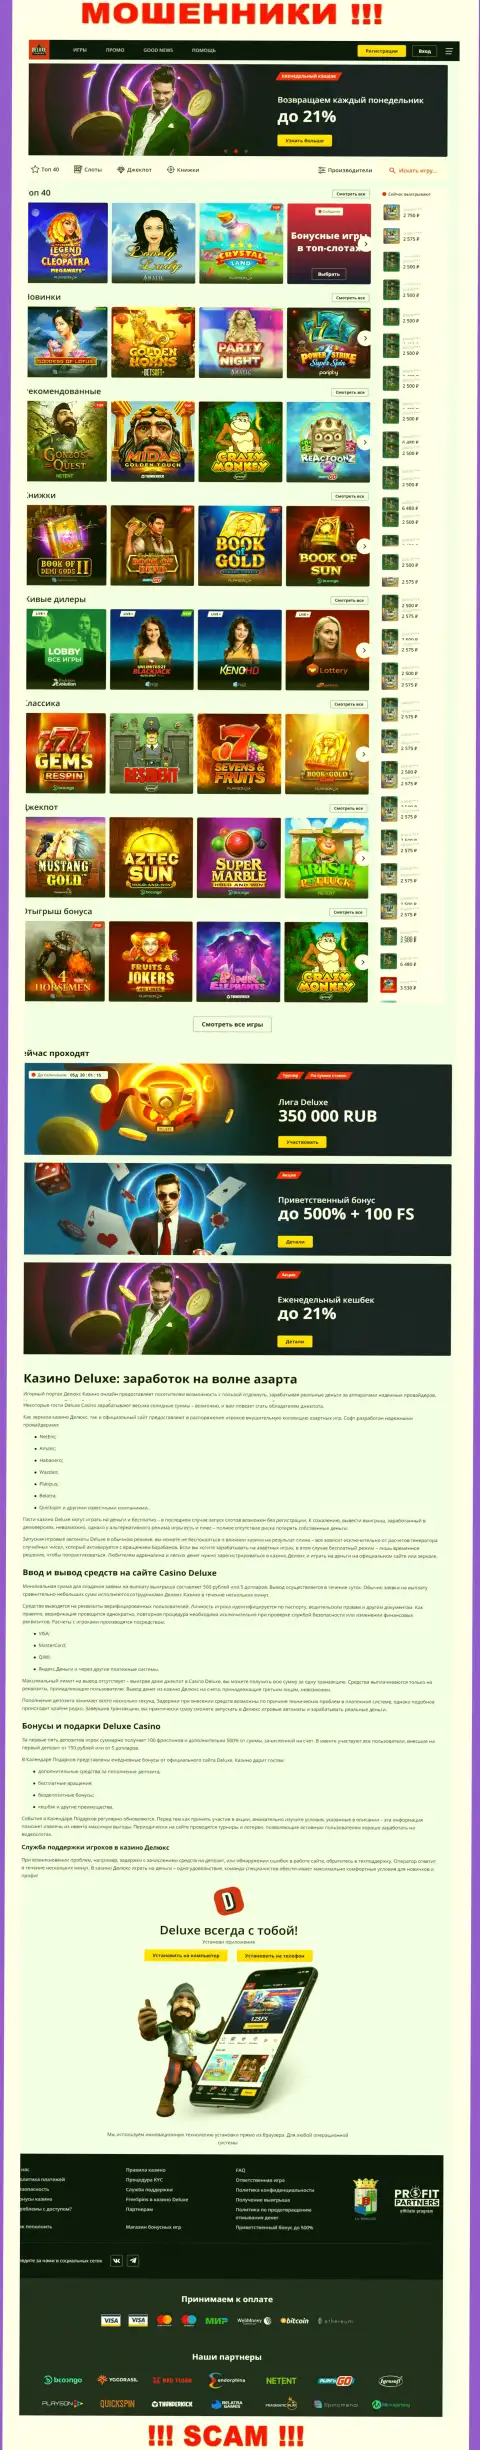 Официальная интернет компании Deluxe Casino